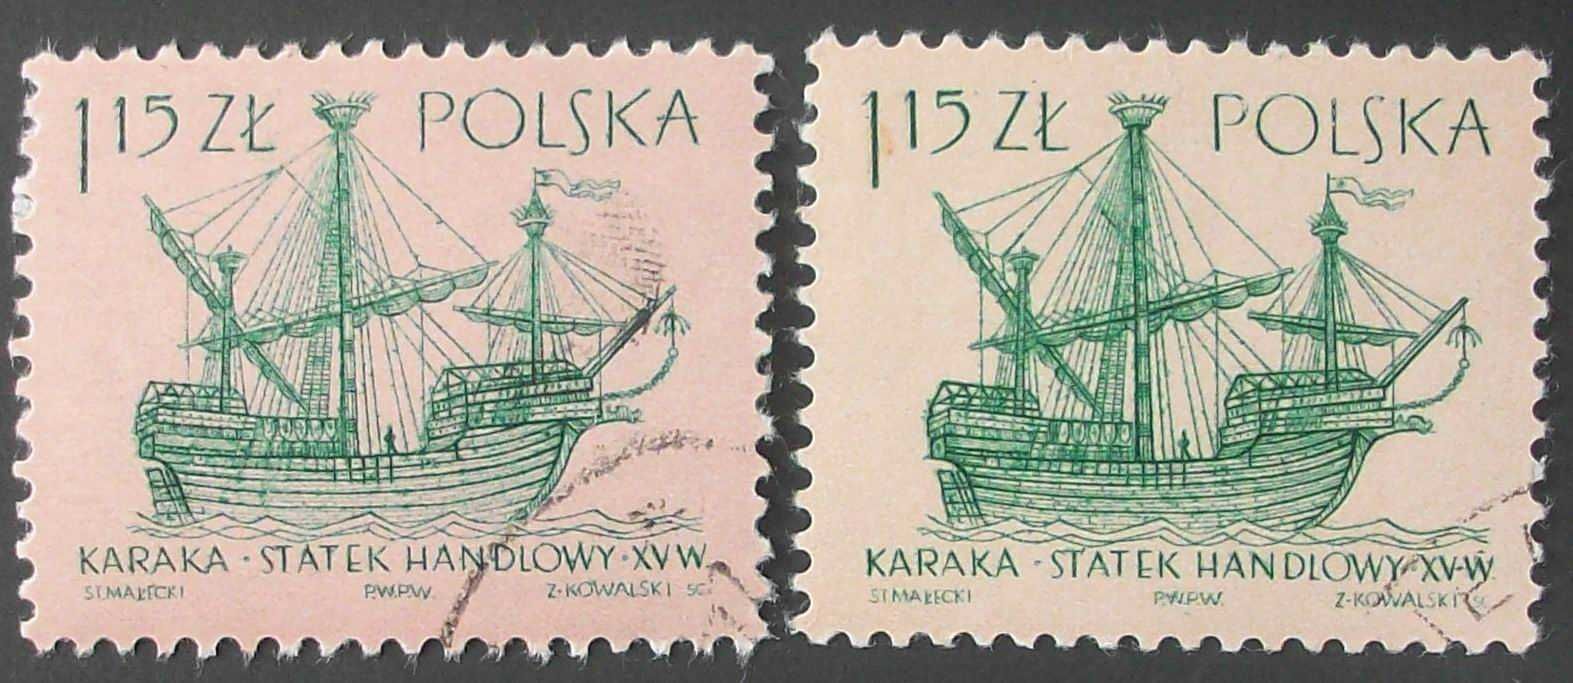 L Znaczki polskie rok 1963  kwartał II - luzaki